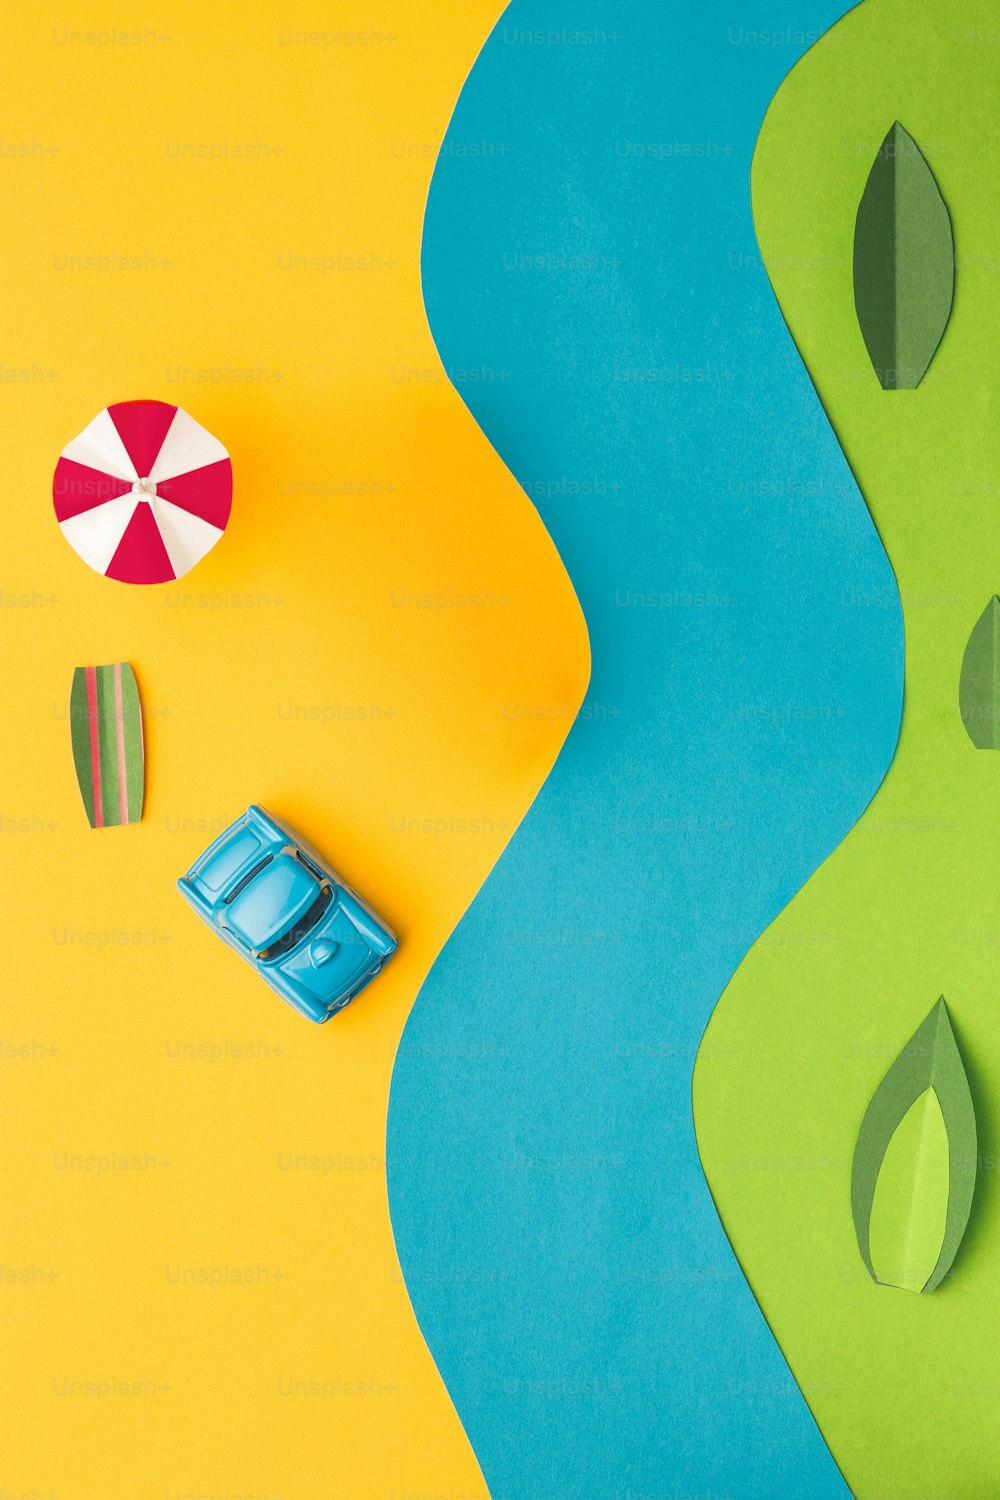 Os brinquedos - carro em miniatura vintage e ônibus em papel colorido da moda. O conceito de pop art e criatividade. O conceito de férias, viagem, viagem, fim de semana, feriados